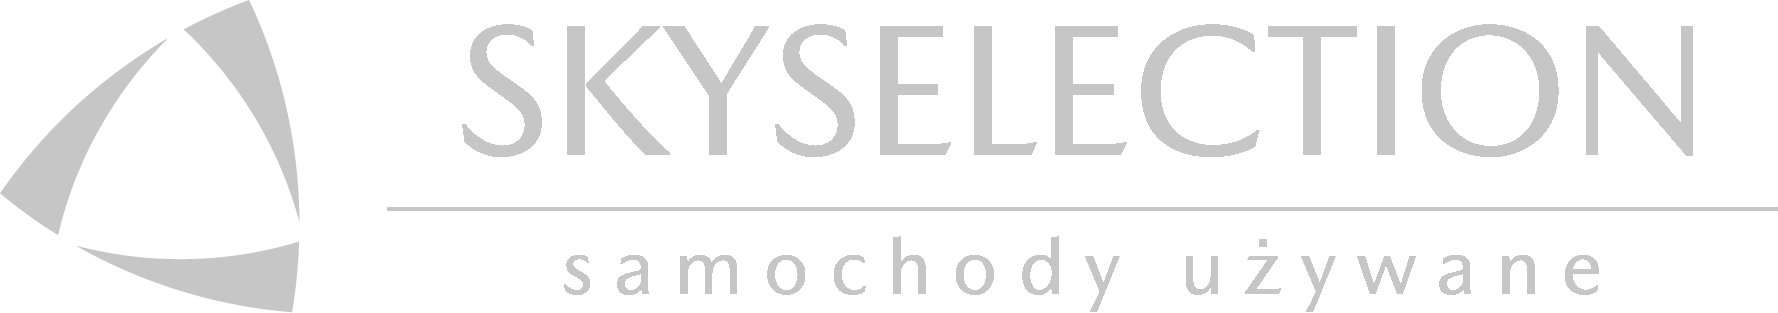 Skyselection - logo